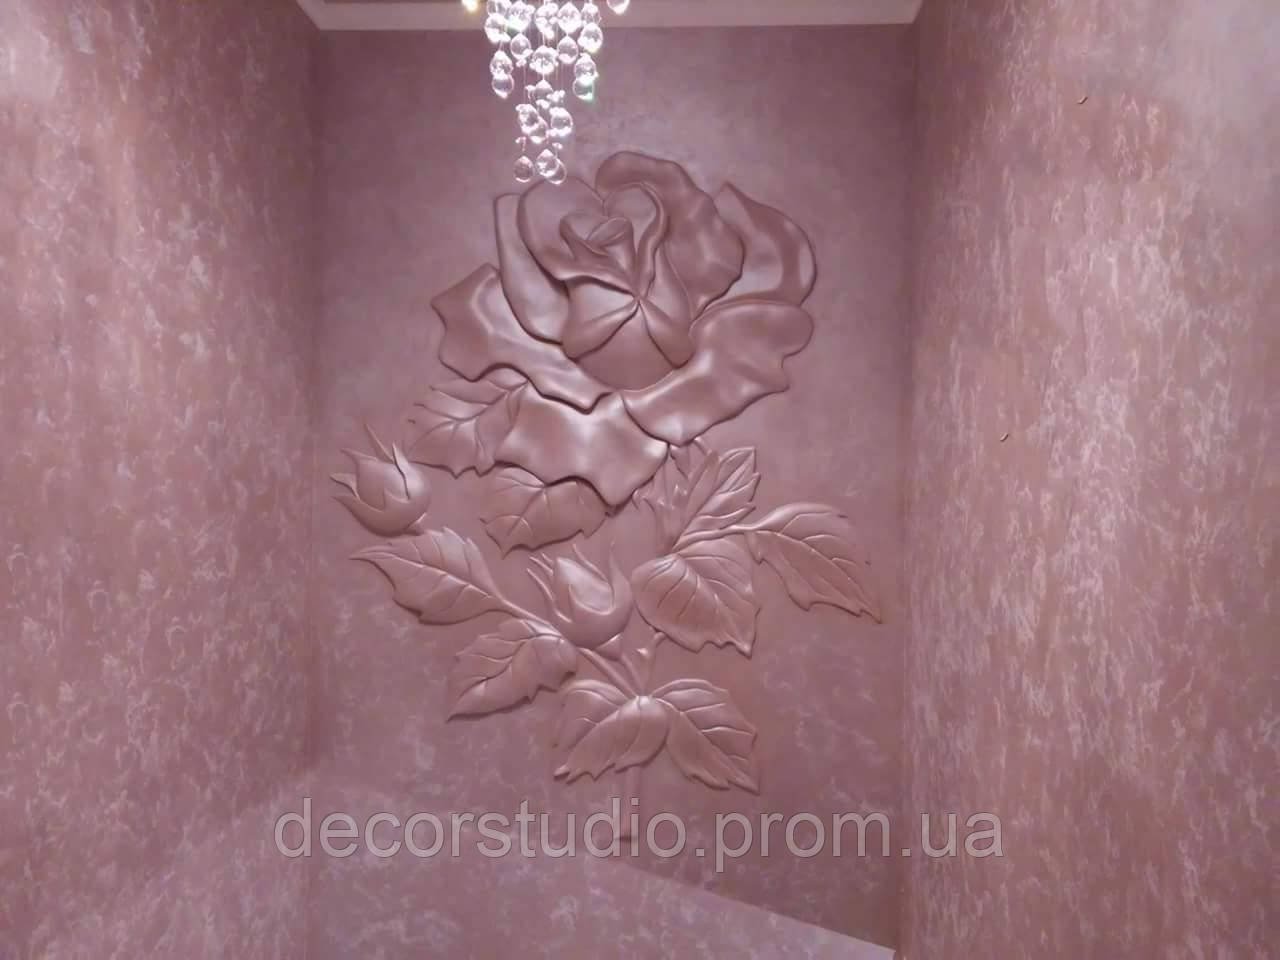 Панно: 3д розы из декоративной штукатурки